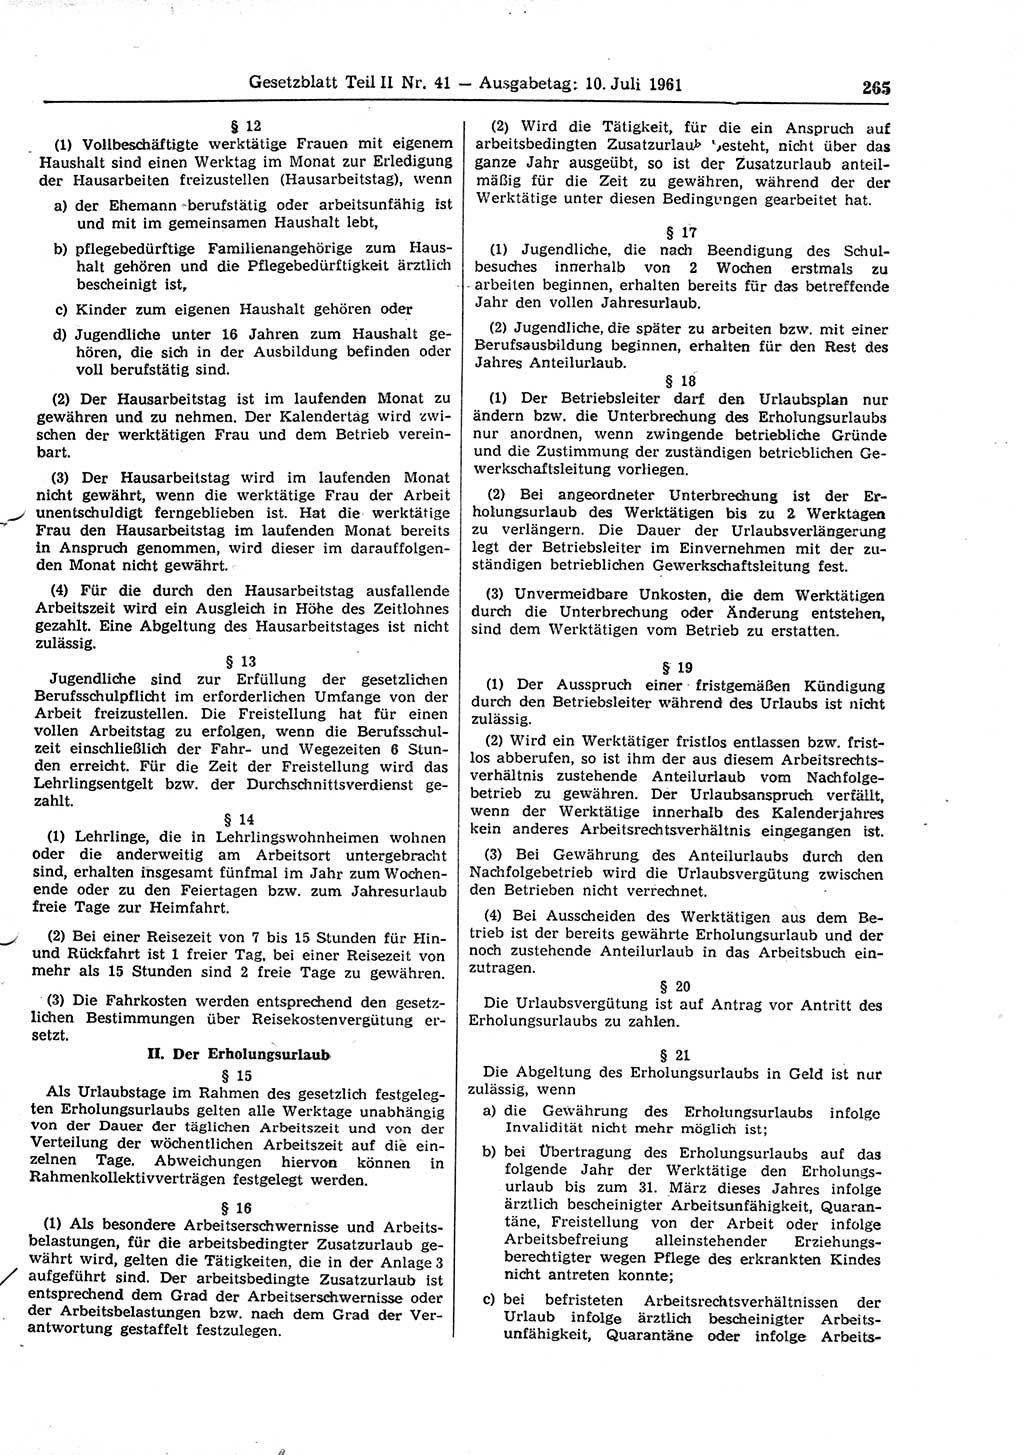 Gesetzblatt (GBl.) der Deutschen Demokratischen Republik (DDR) Teil ⅠⅠ 1961, Seite 265 (GBl. DDR ⅠⅠ 1961, S. 265)